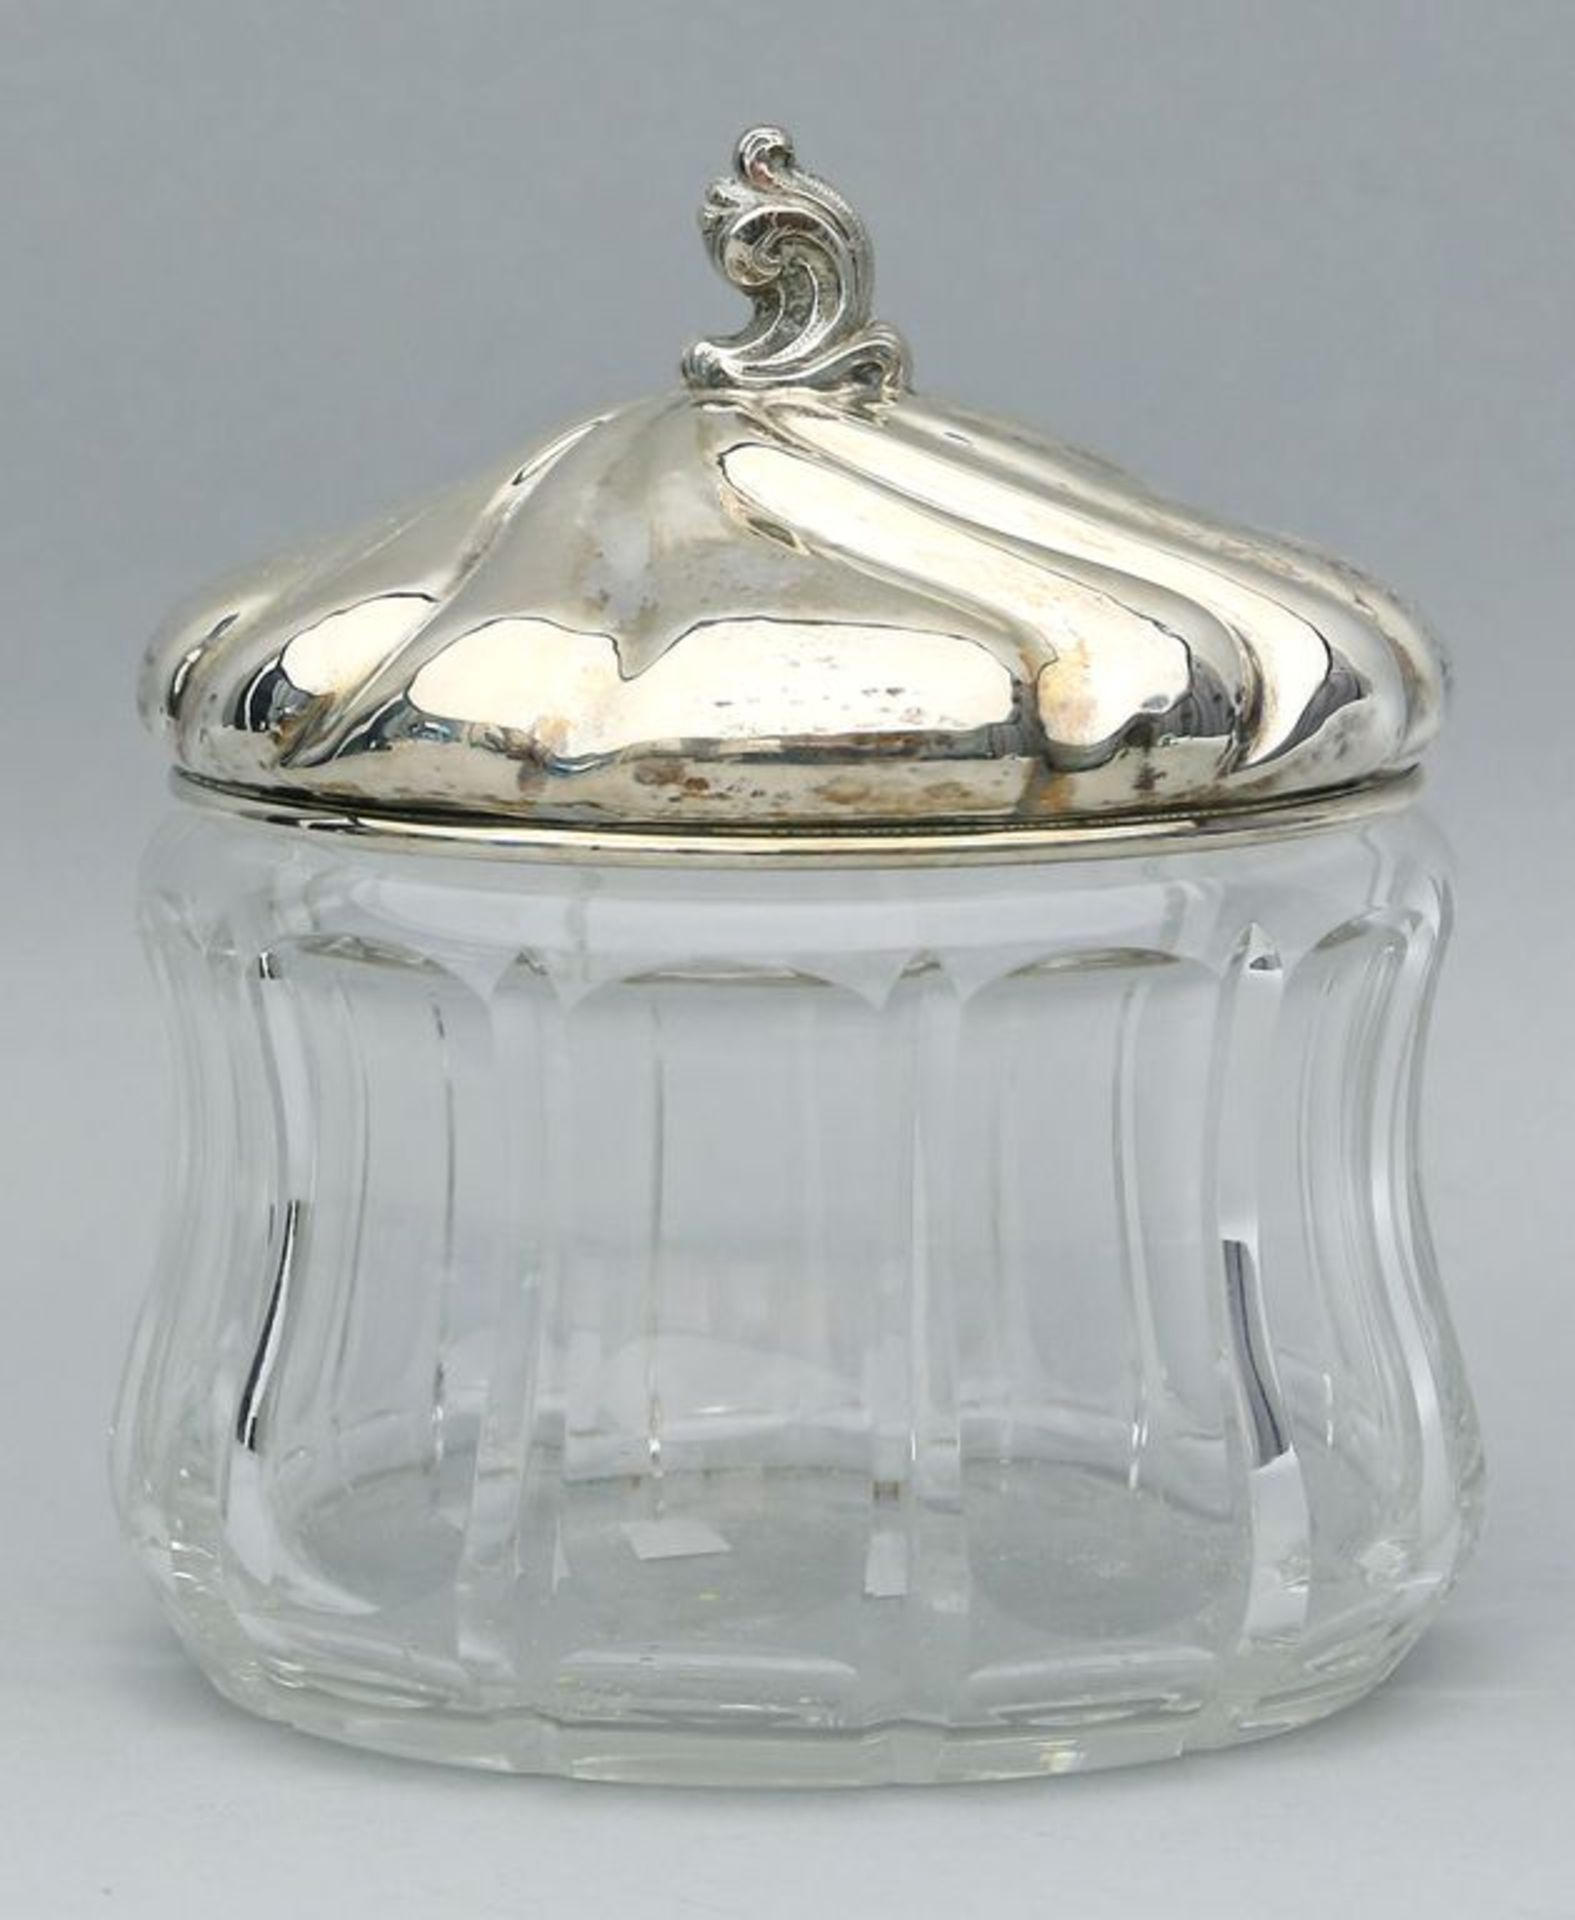 Bonboniere. Farbloser Glaskorpus mit 835/000 Silberdeckel, 157 g. Eingedrehte Form mit